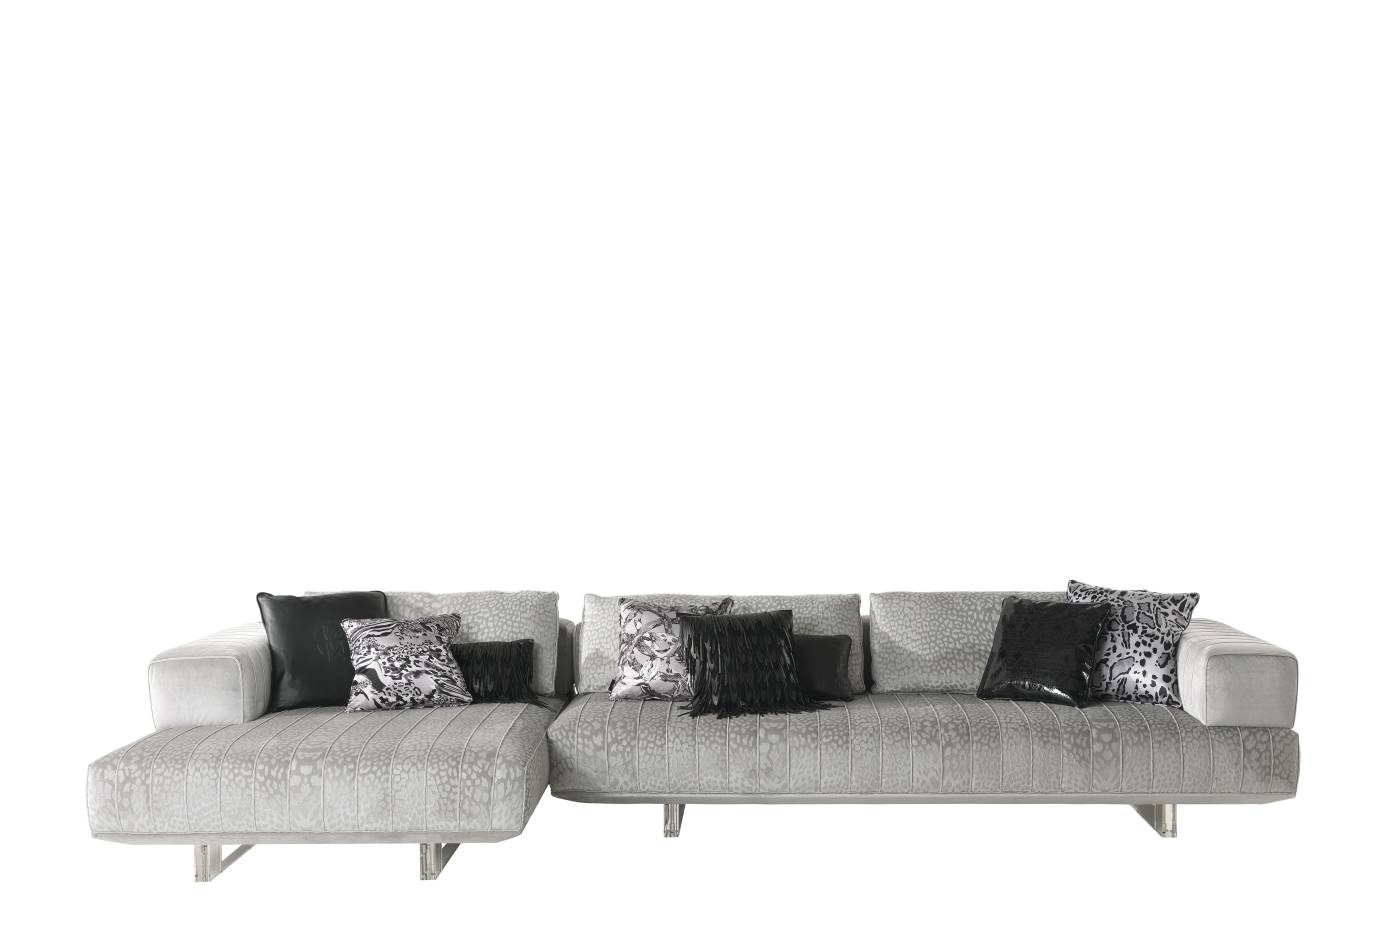 RCHI_ARUBA_modular-sofa_composition-A_2021_01.jpg